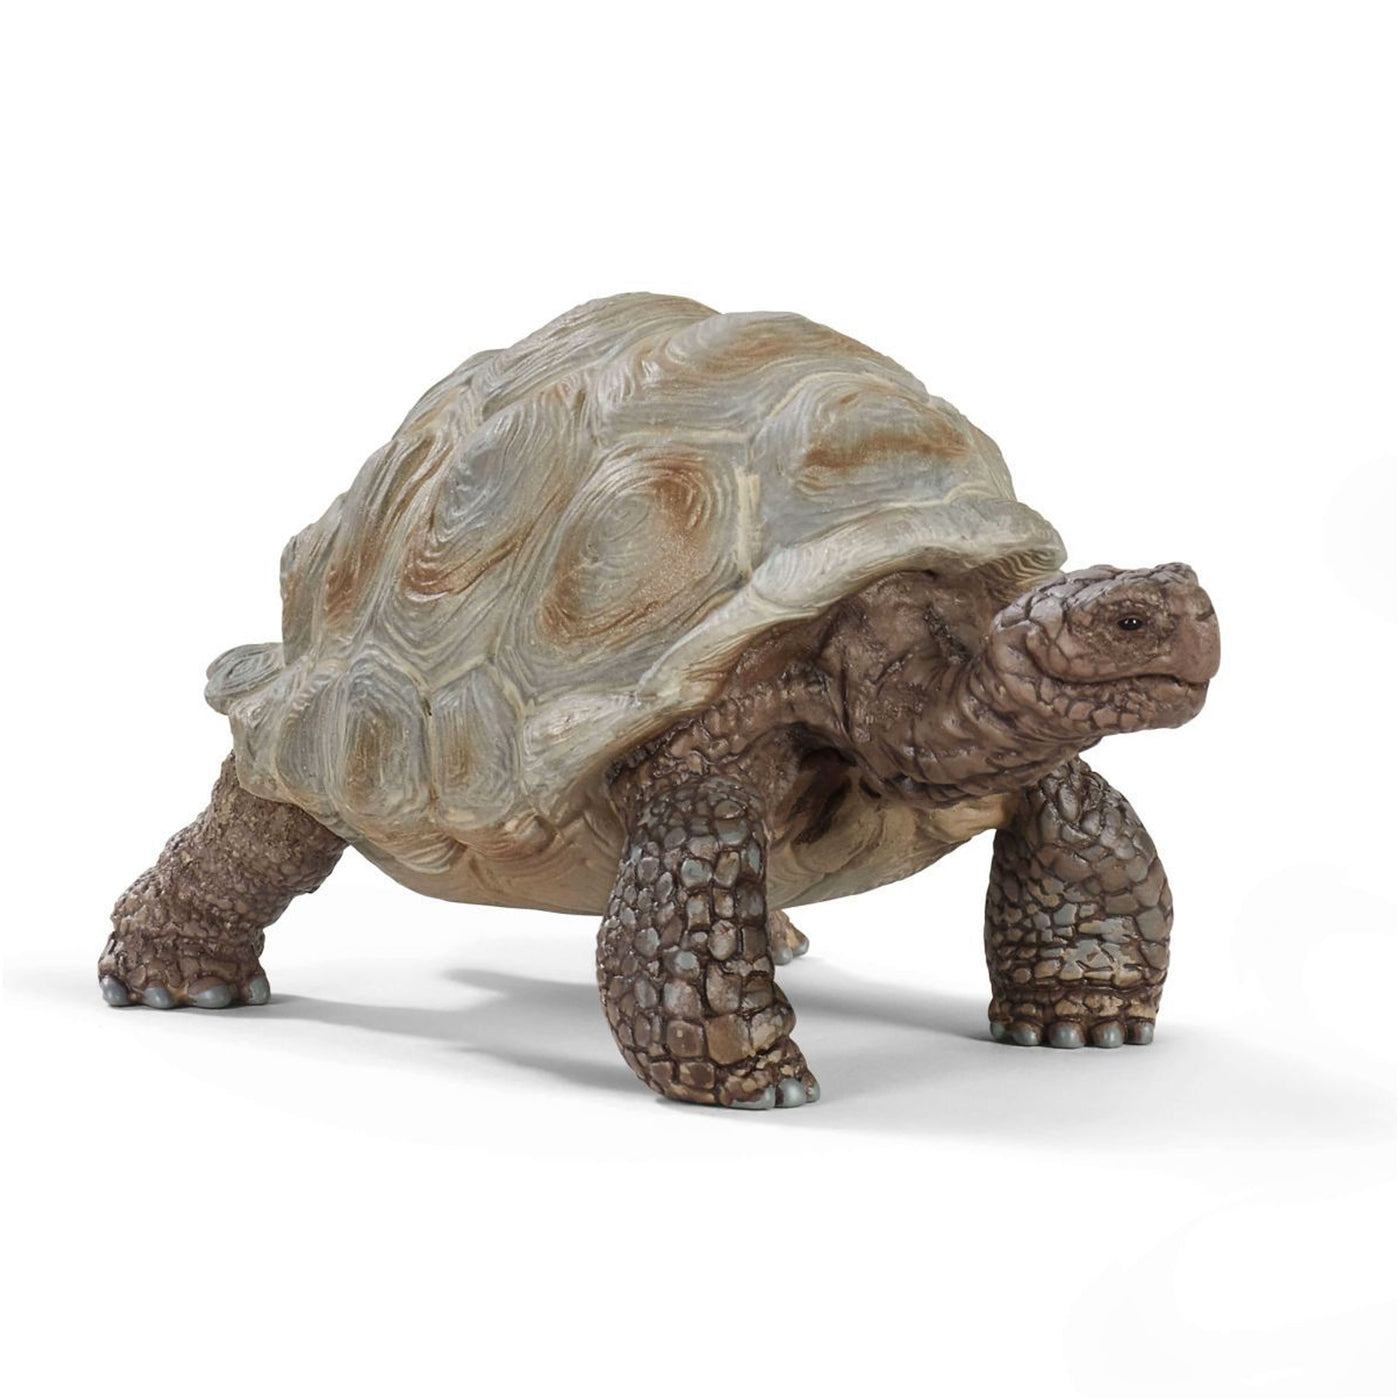 Schleich Wild Life Giant Tortoise Toy Figurine